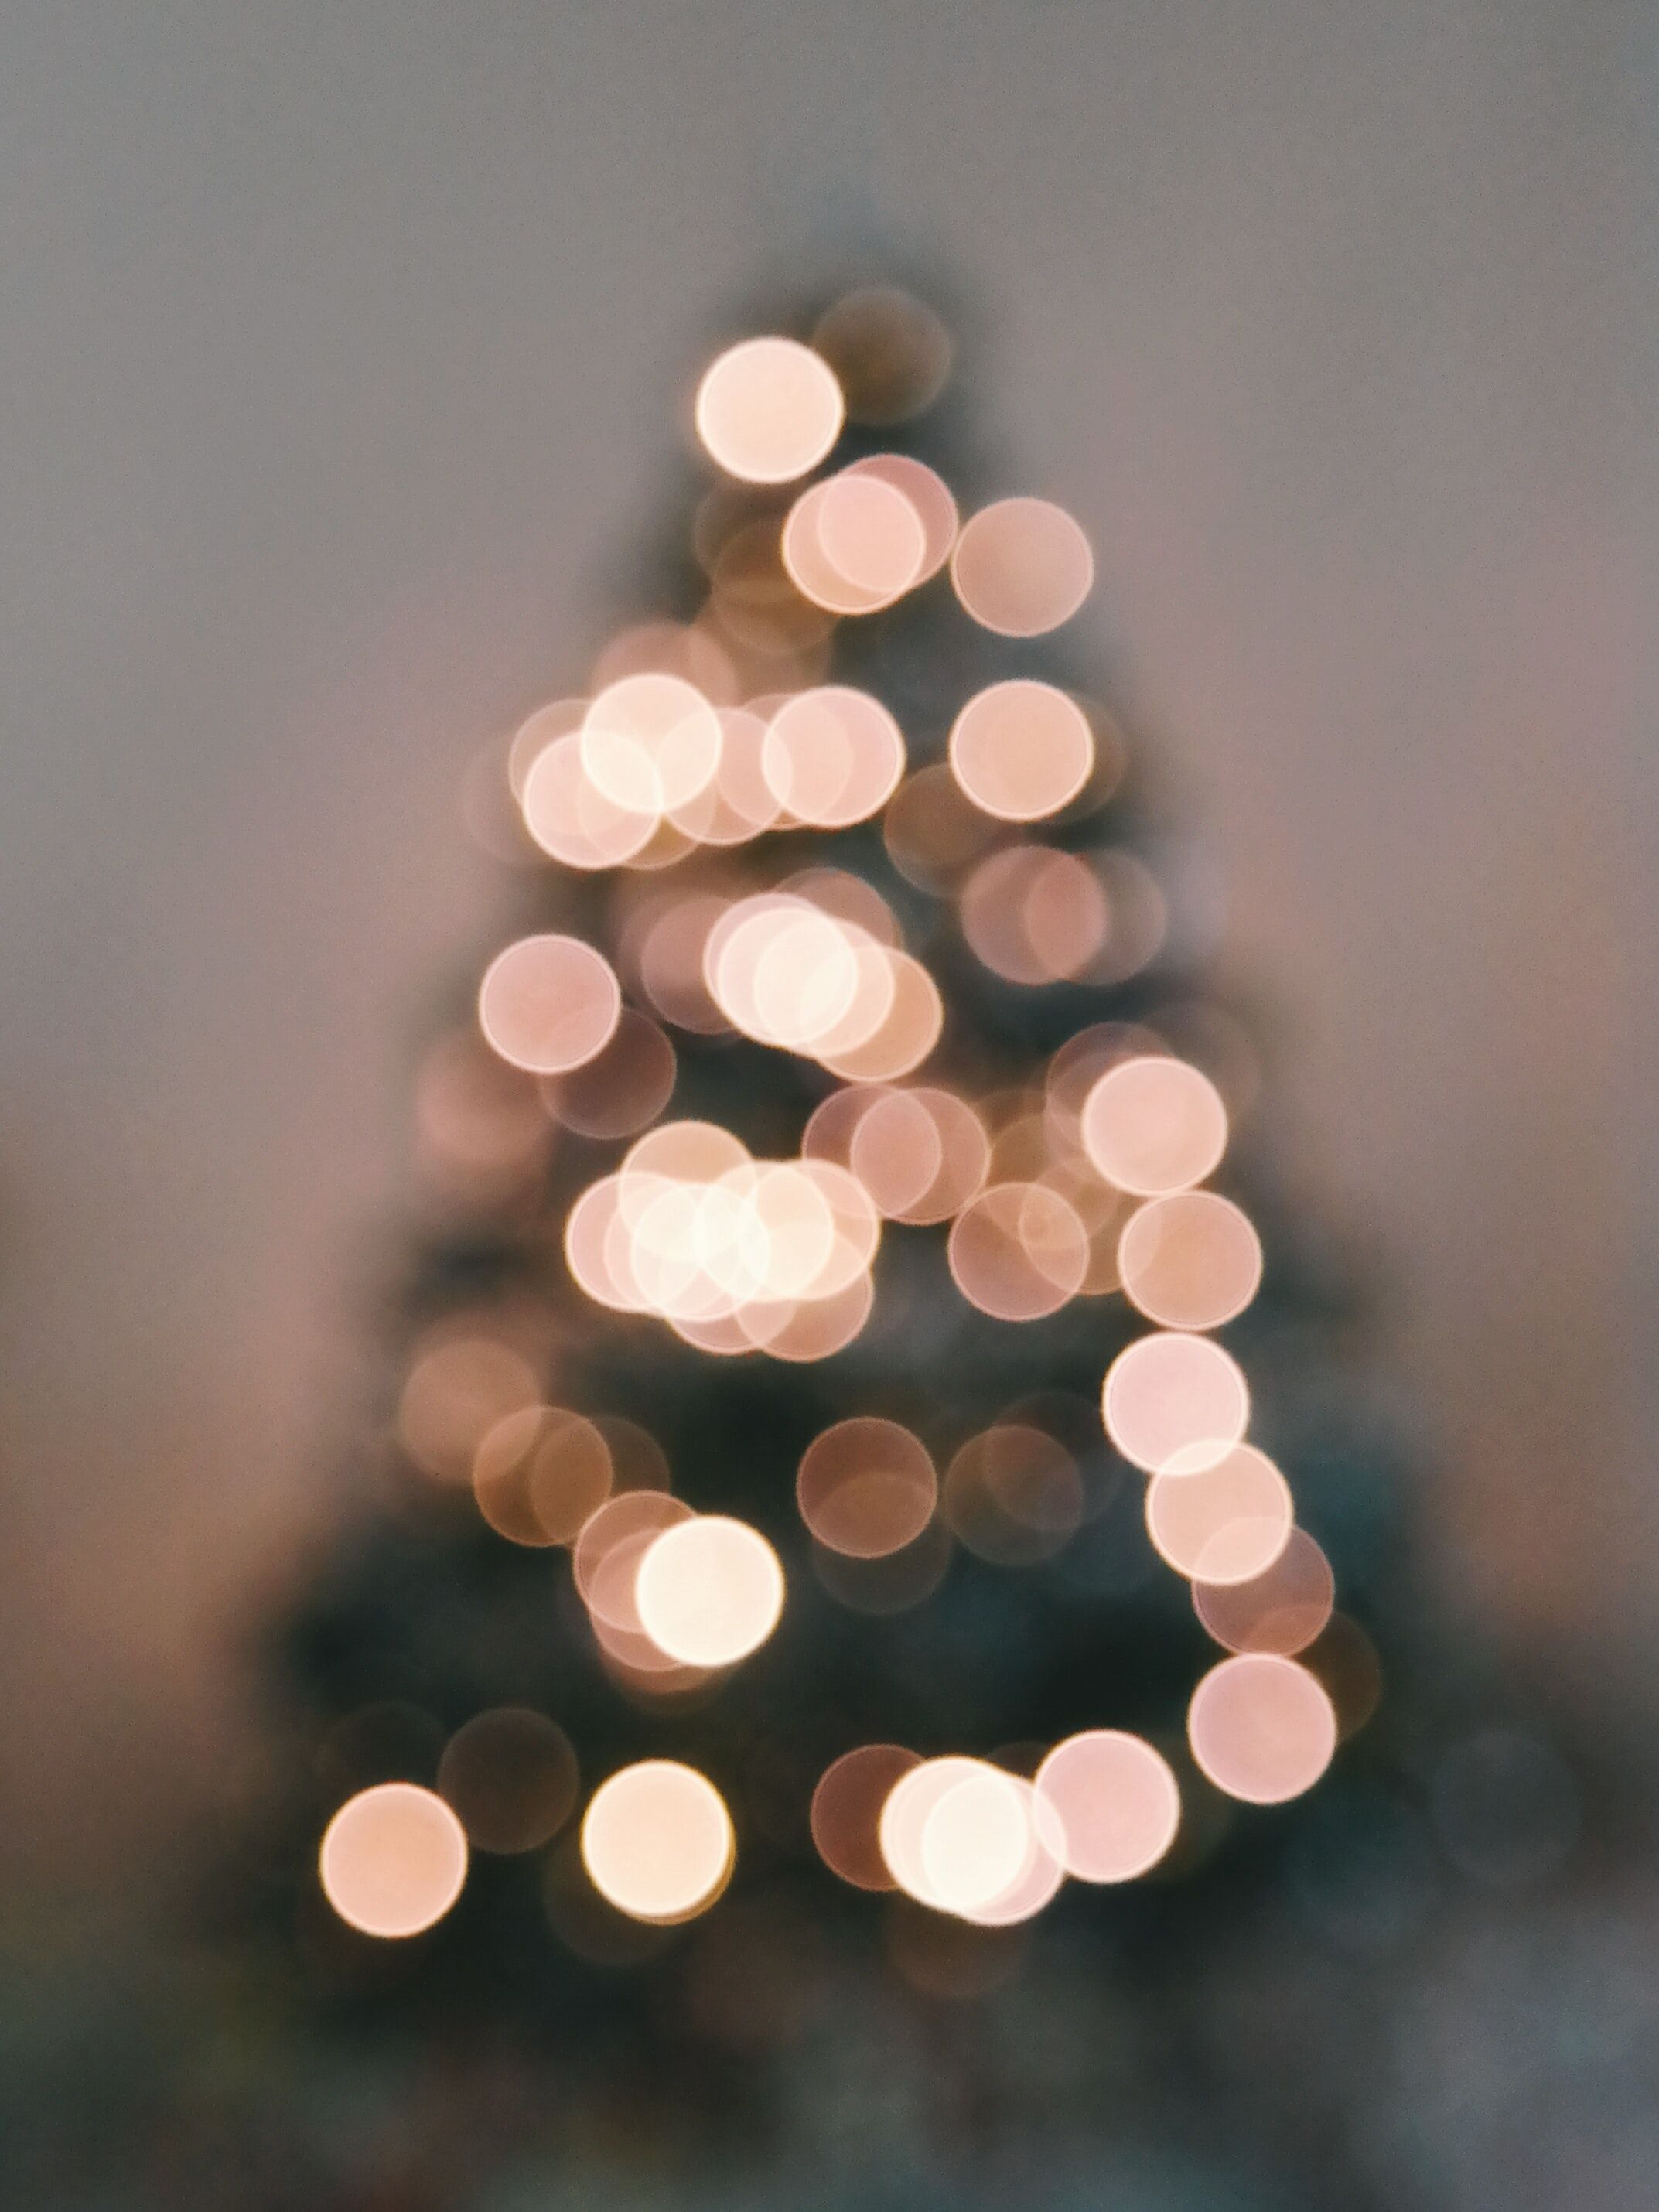 Defocused Image of Illuminated Christmas Tree Against Sky · Free